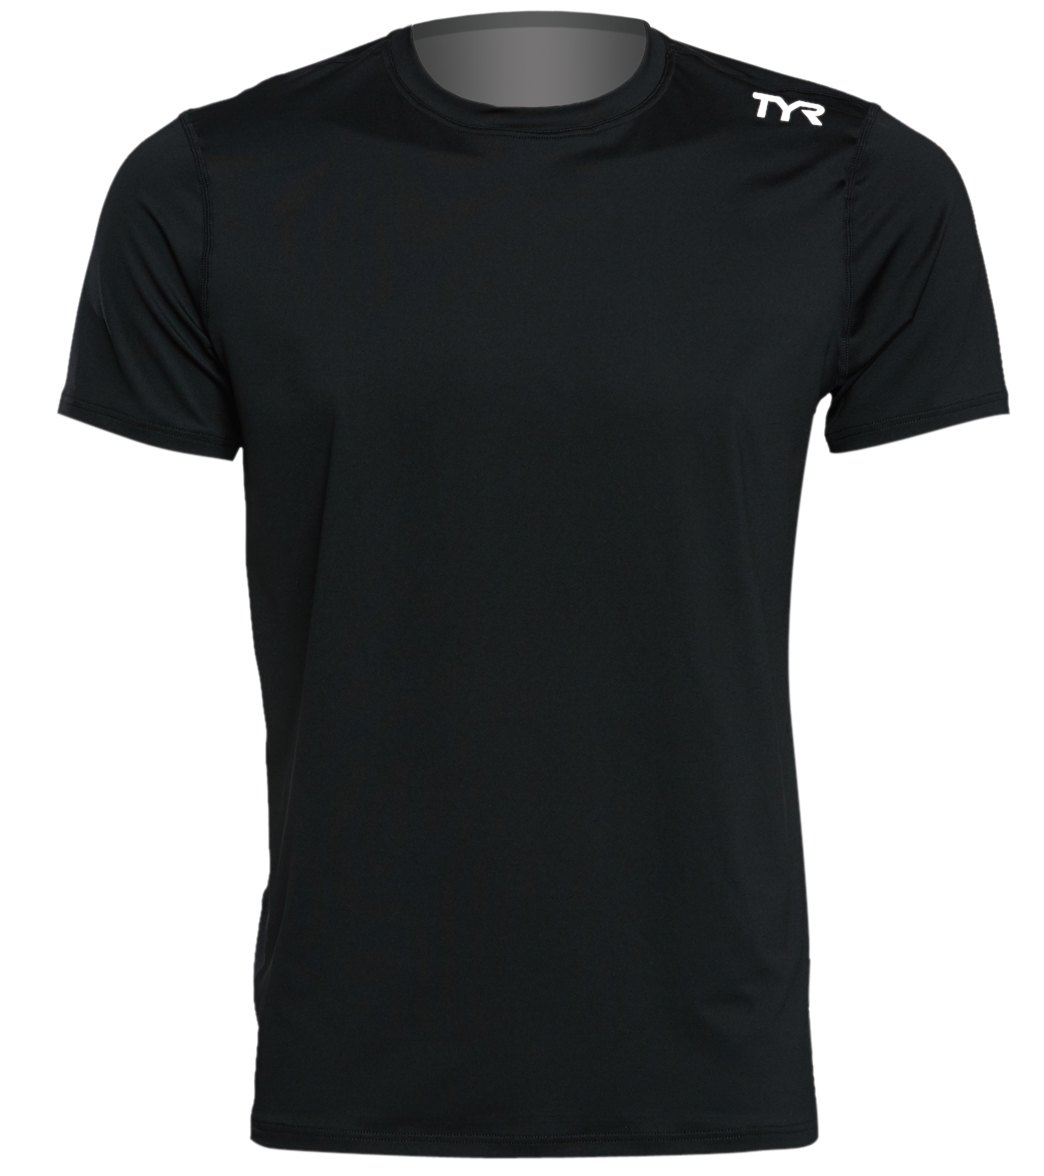 TYR Men's Short Sleeve Rashguard Shirt - Black Large Size Large - Swimoutlet.com